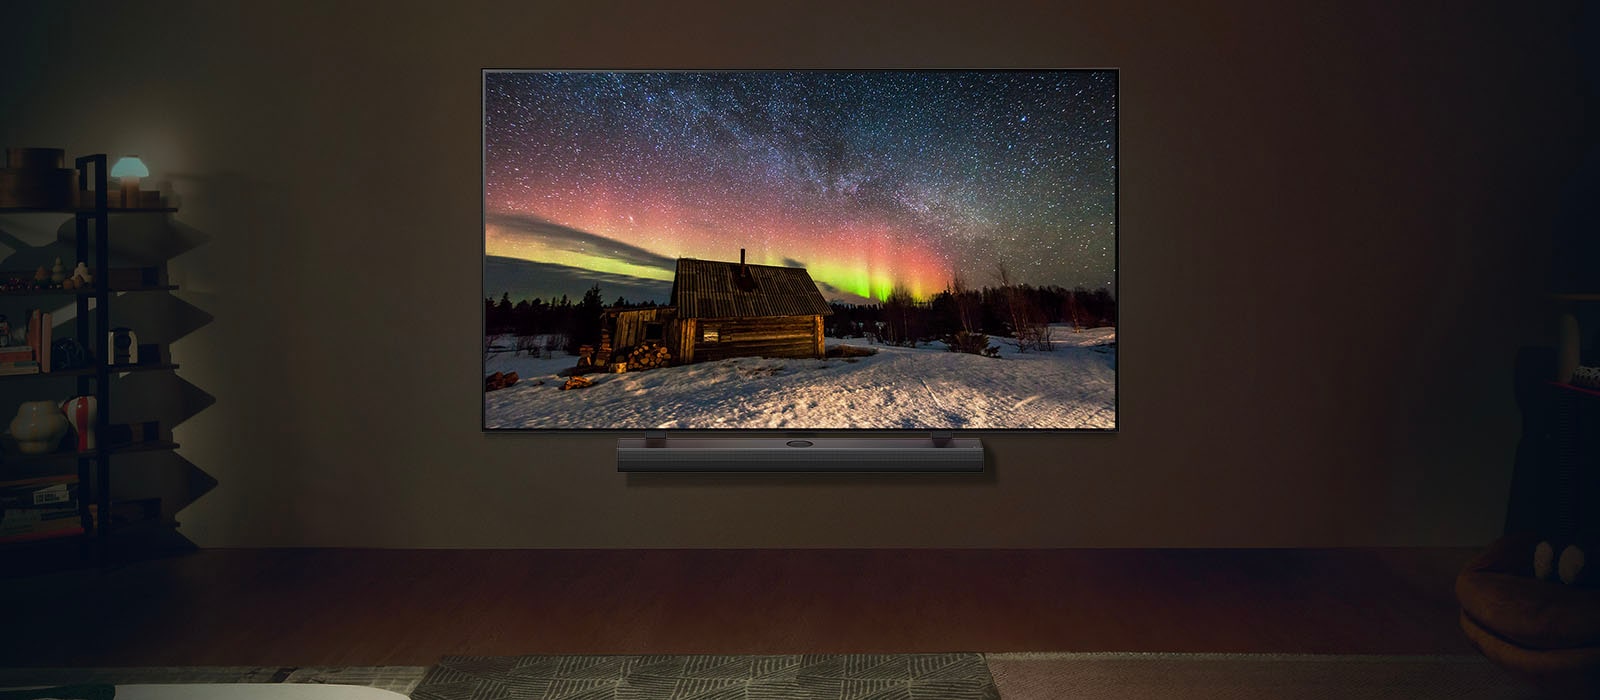 LG TV i LG soundbar u savremenom životnom prostoru tokom noći. Na ekranu se prikazuje slika polarne svetlosti na idealnom nivou osvetljenosti.